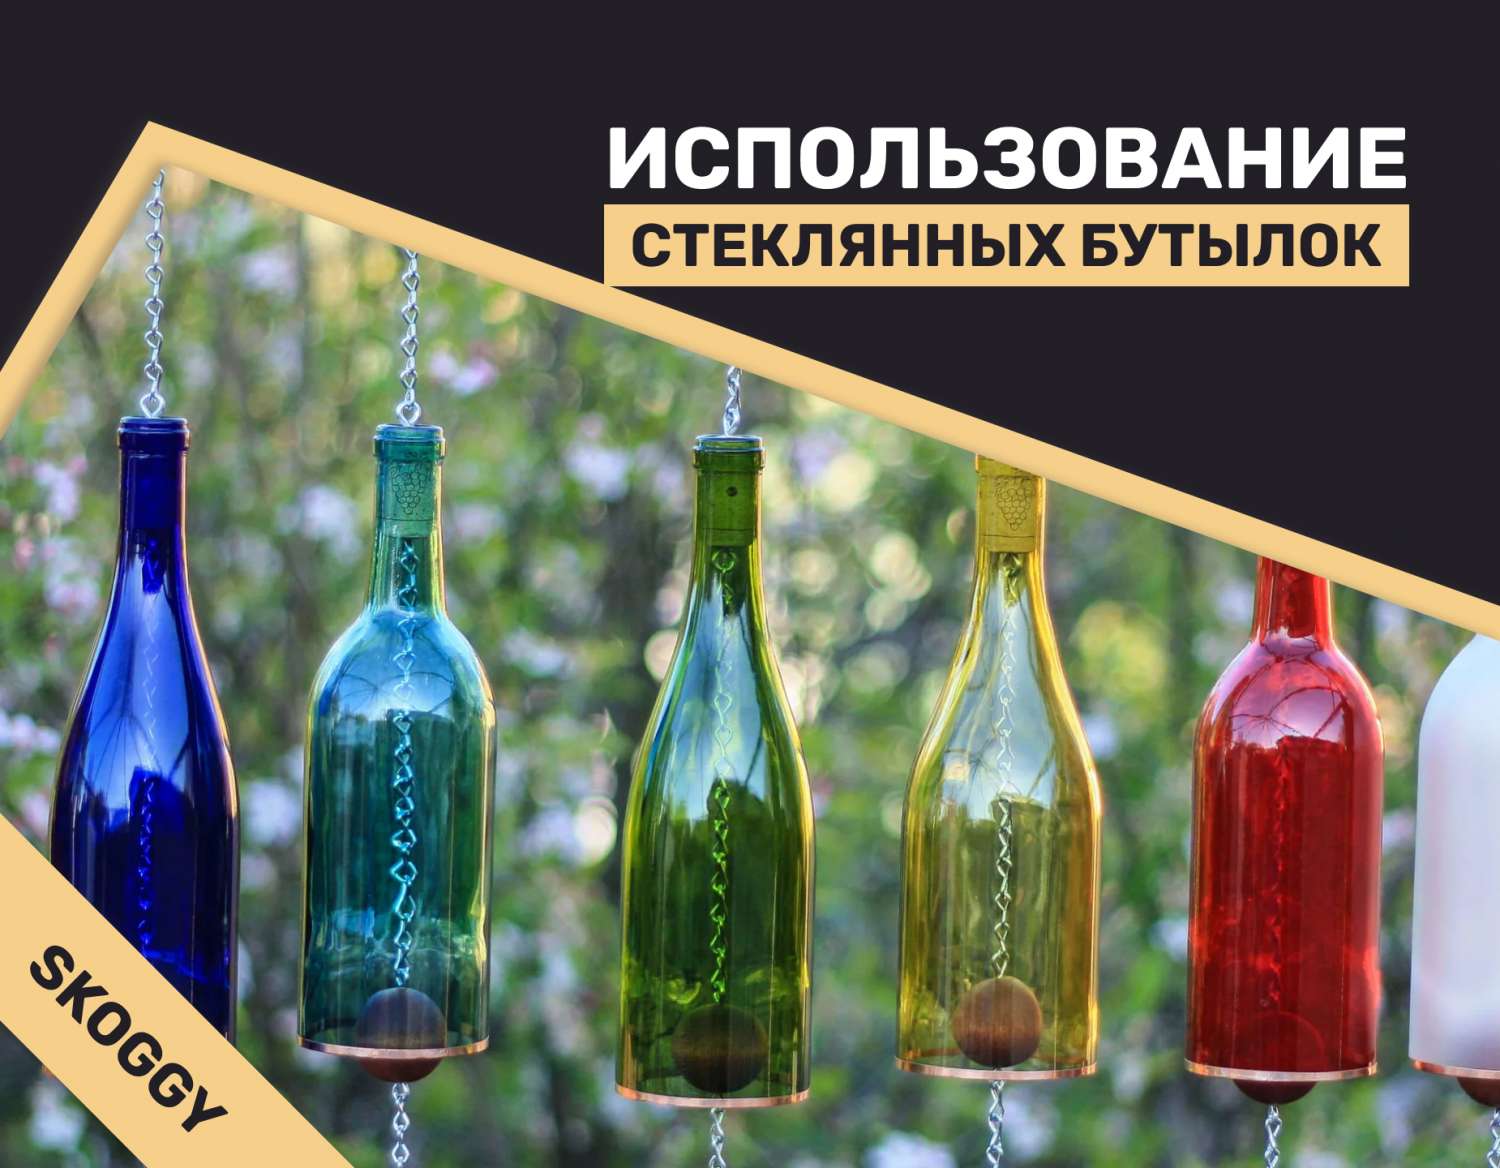 Стеклянные бутылки от Glass Decor